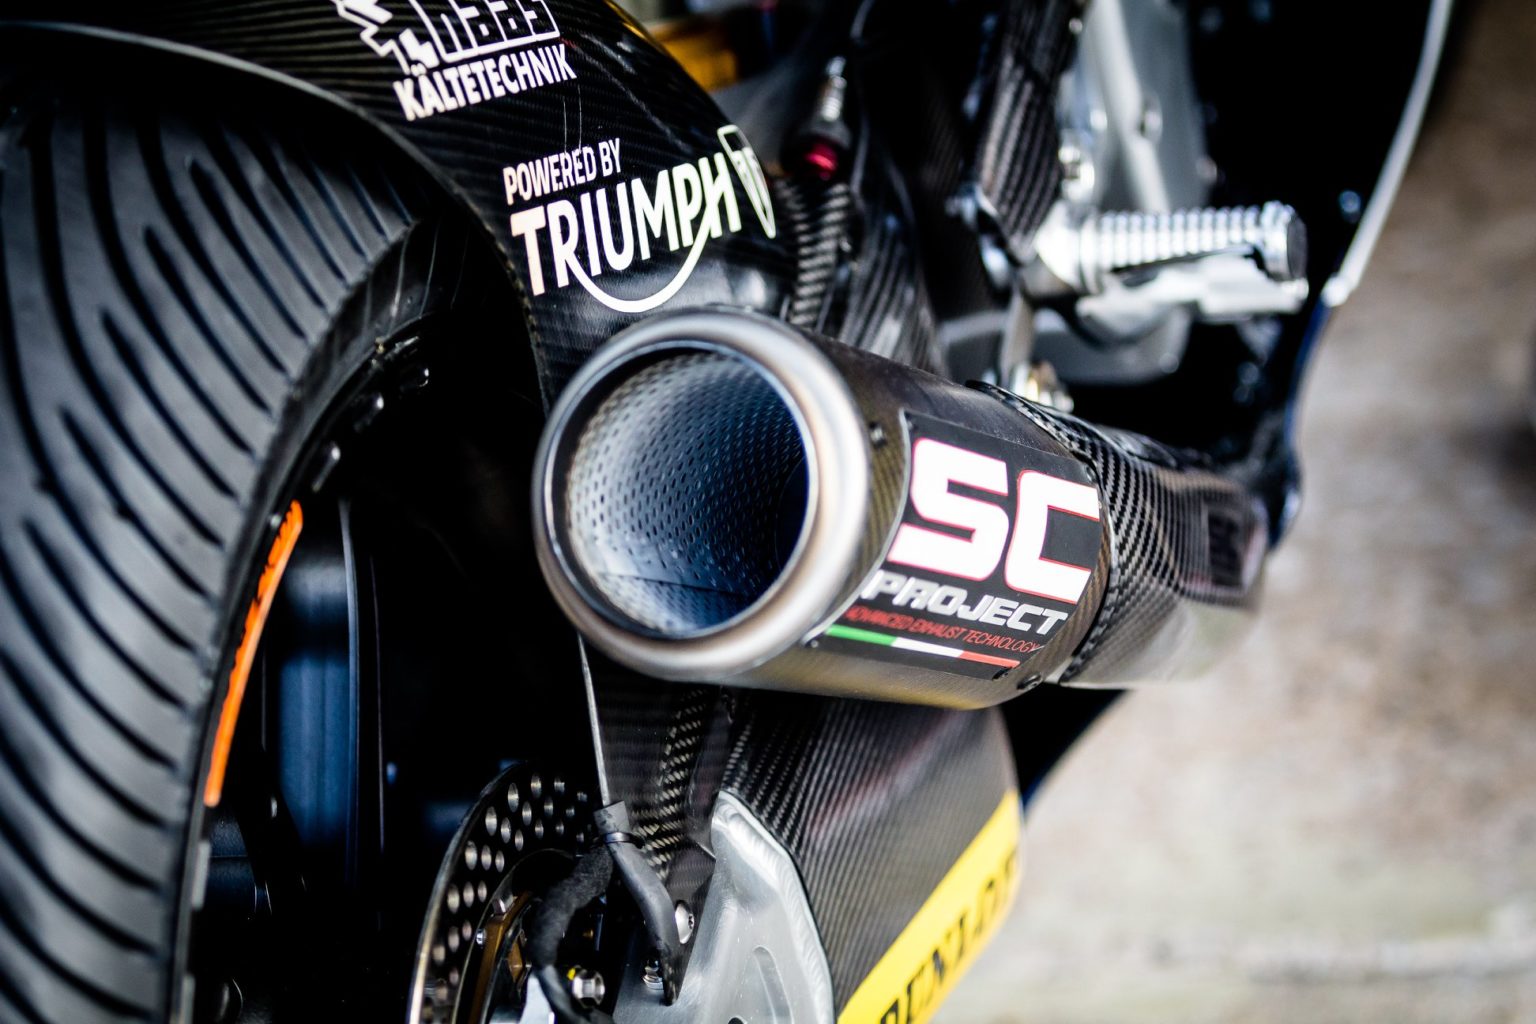 Moto2, Carbonio